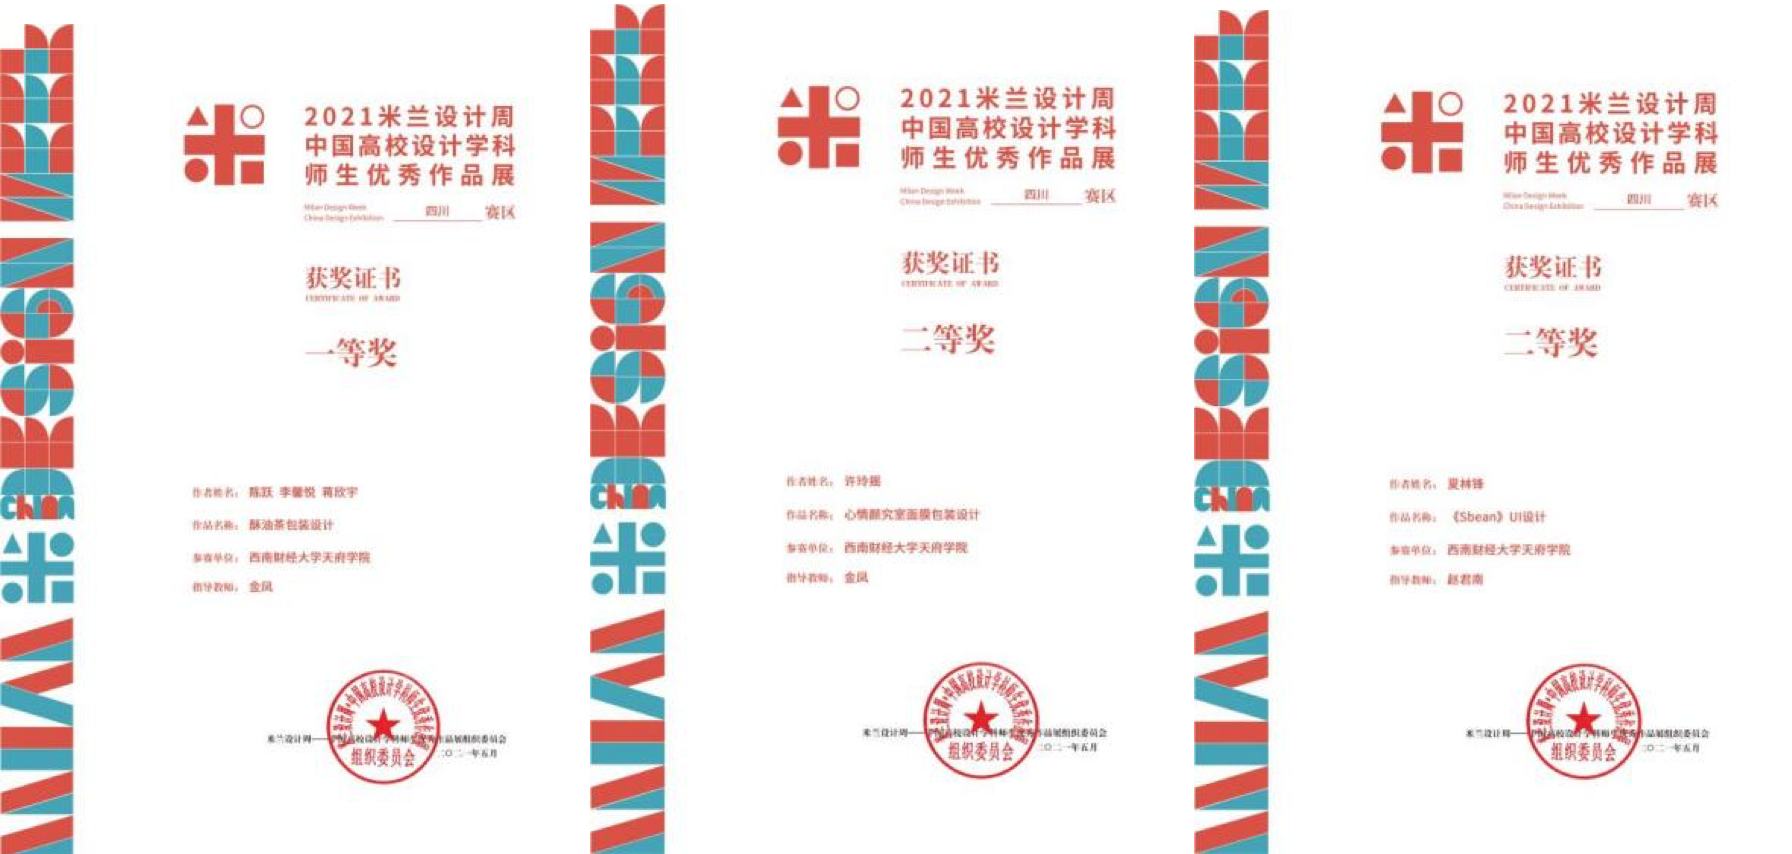 喜报西财天府学子在米兰设计周第五届中国高校作品设计展中再创佳绩